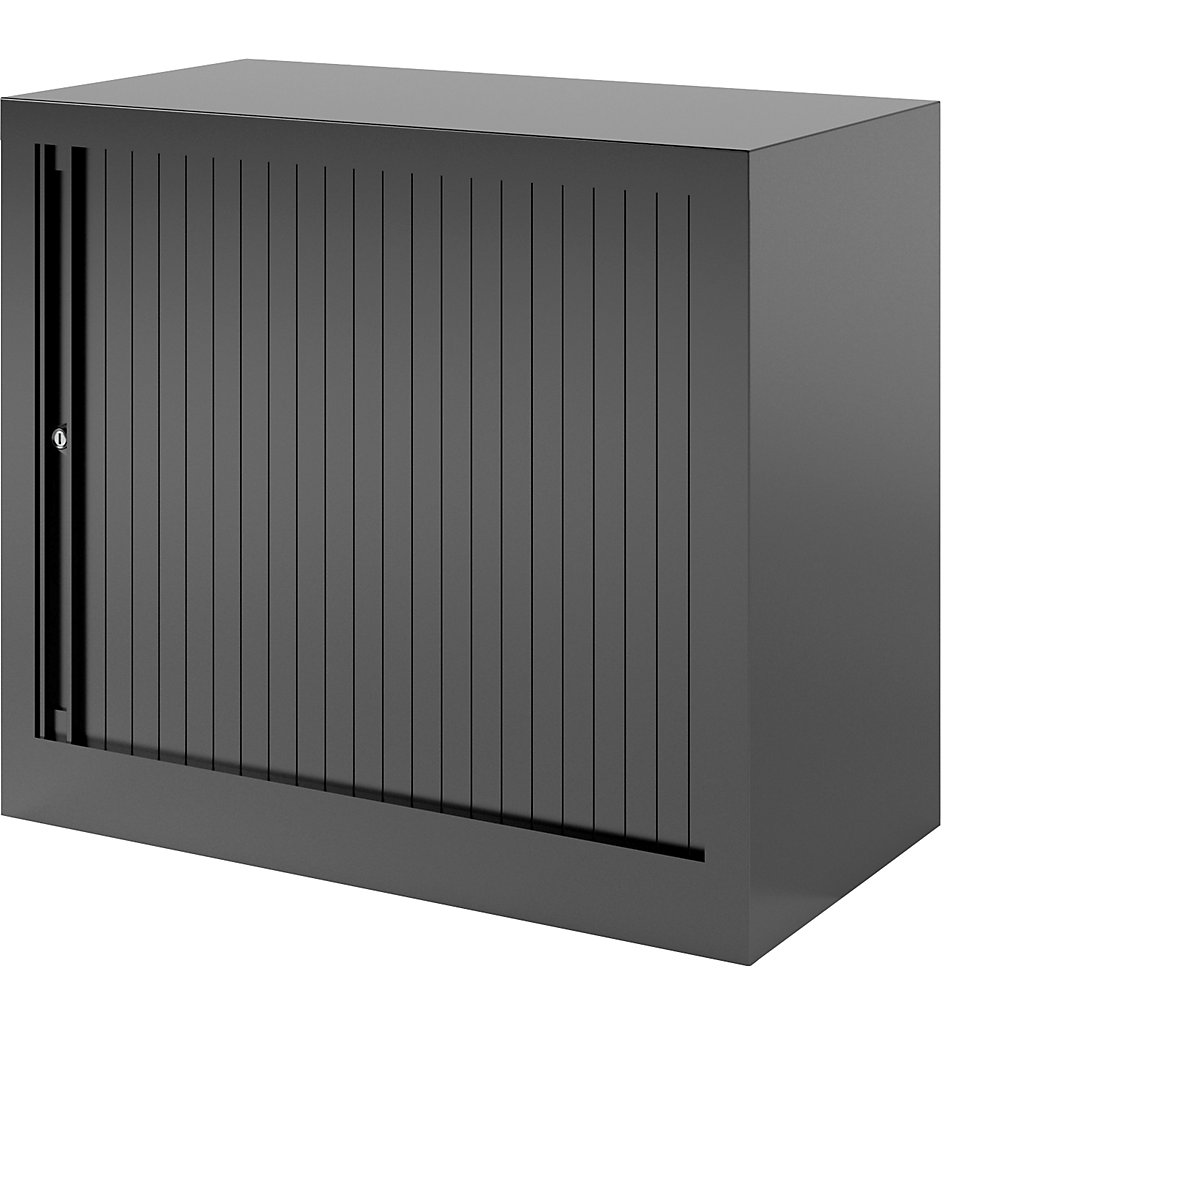 EURO roller shutter cupboard – BISLEY, width 800 mm, 1 shelf, black-2